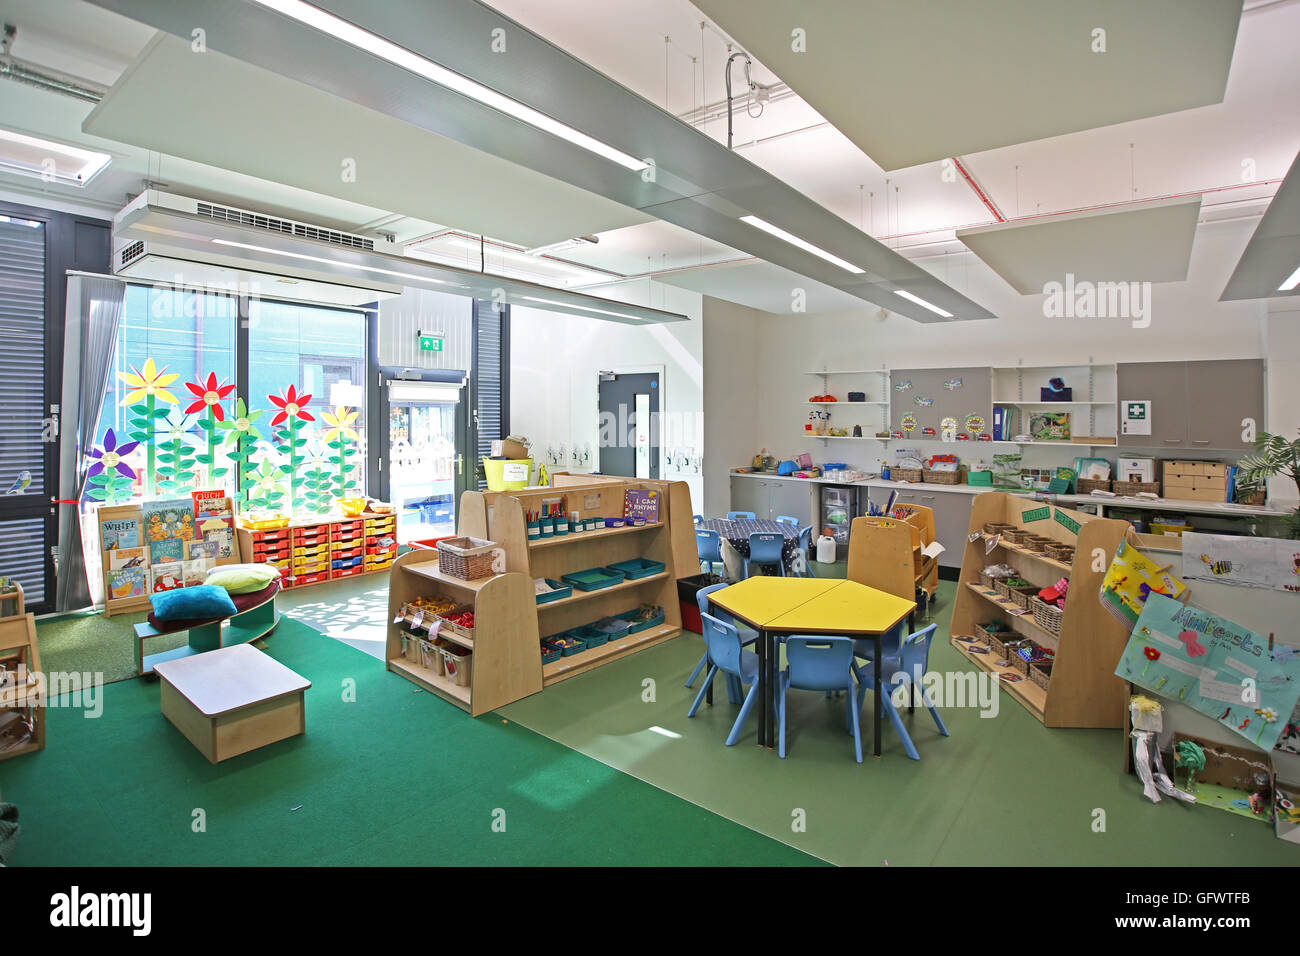 Dans une nouvelle classe maternelle, Londres l'école primaire. Montre un bureau et de chaises avec les œuvres de l'élève sur les murs Banque D'Images